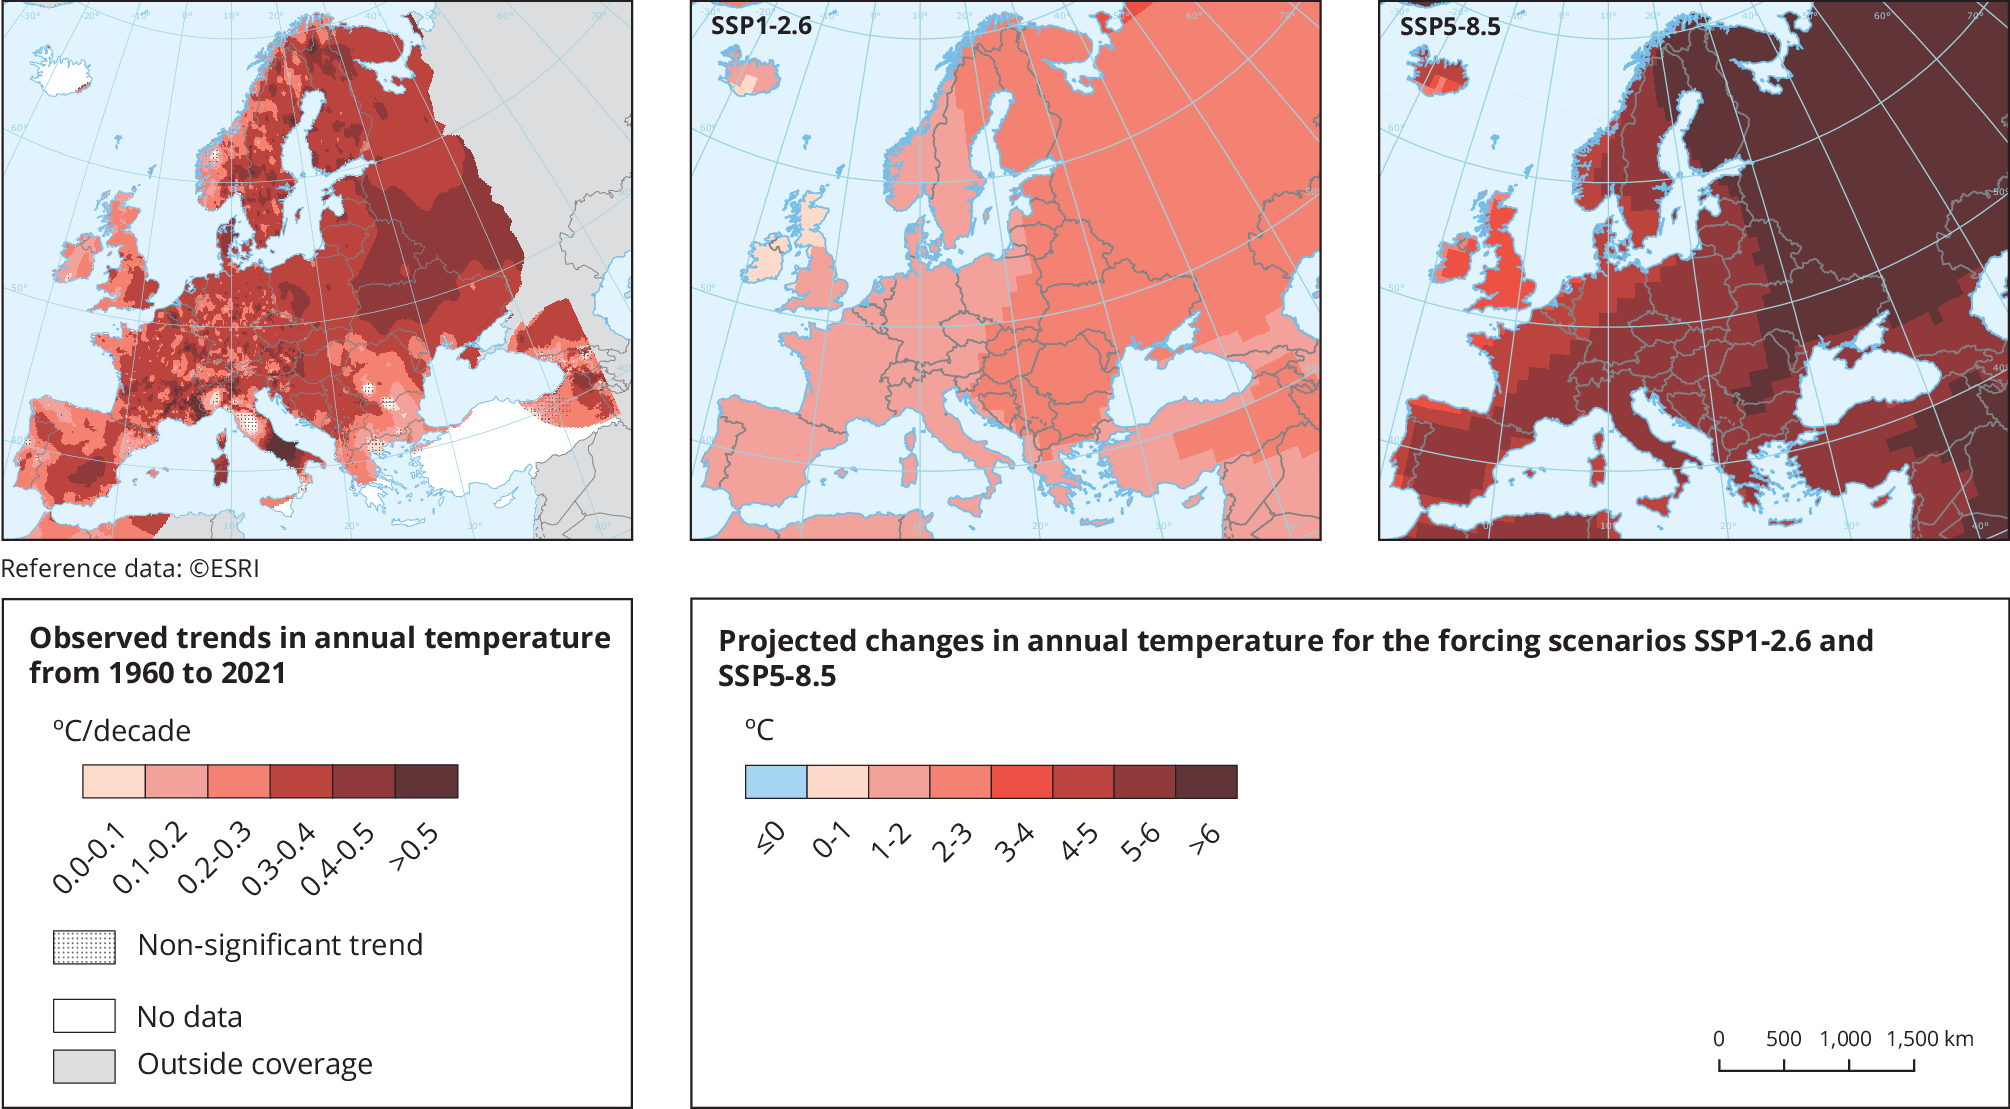 Tendência de temperatura média anual observada de 1960 a 2021 (painel esquerdo) e mudança de temperatura projetada para o século 21 em diferentes cenários SSP (painéis direito) na Europa